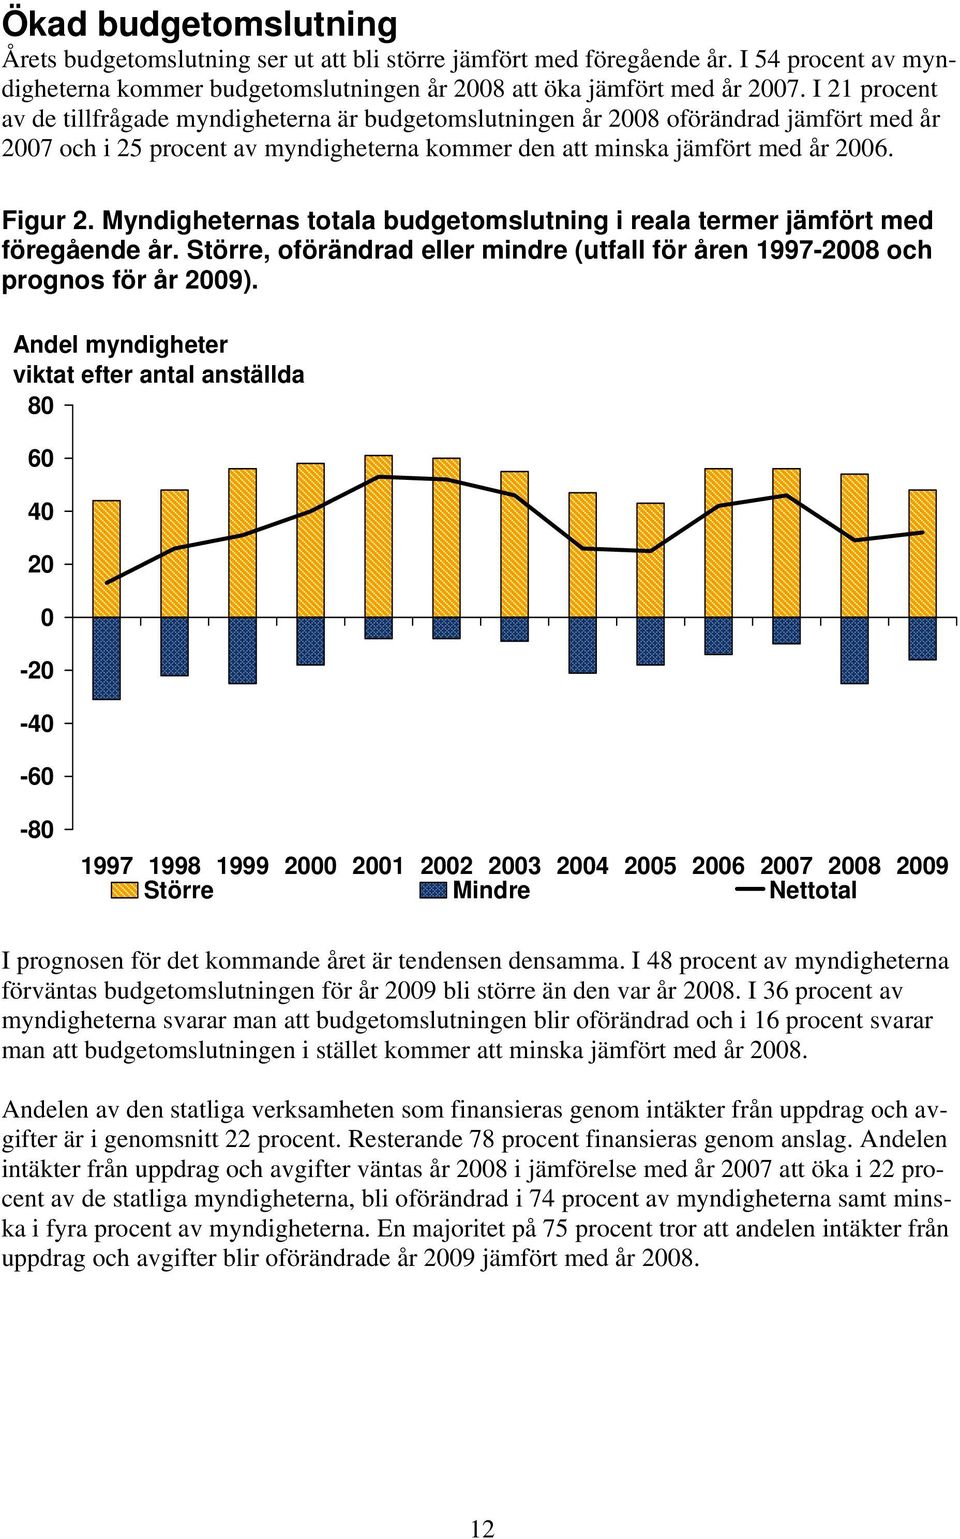 Myndigheternas totala budgetomslutning i reala termer jämfört med föregående år. Större, oförändrad eller mindre (utfall för åren 1997-2008 och prognos för år 2009).